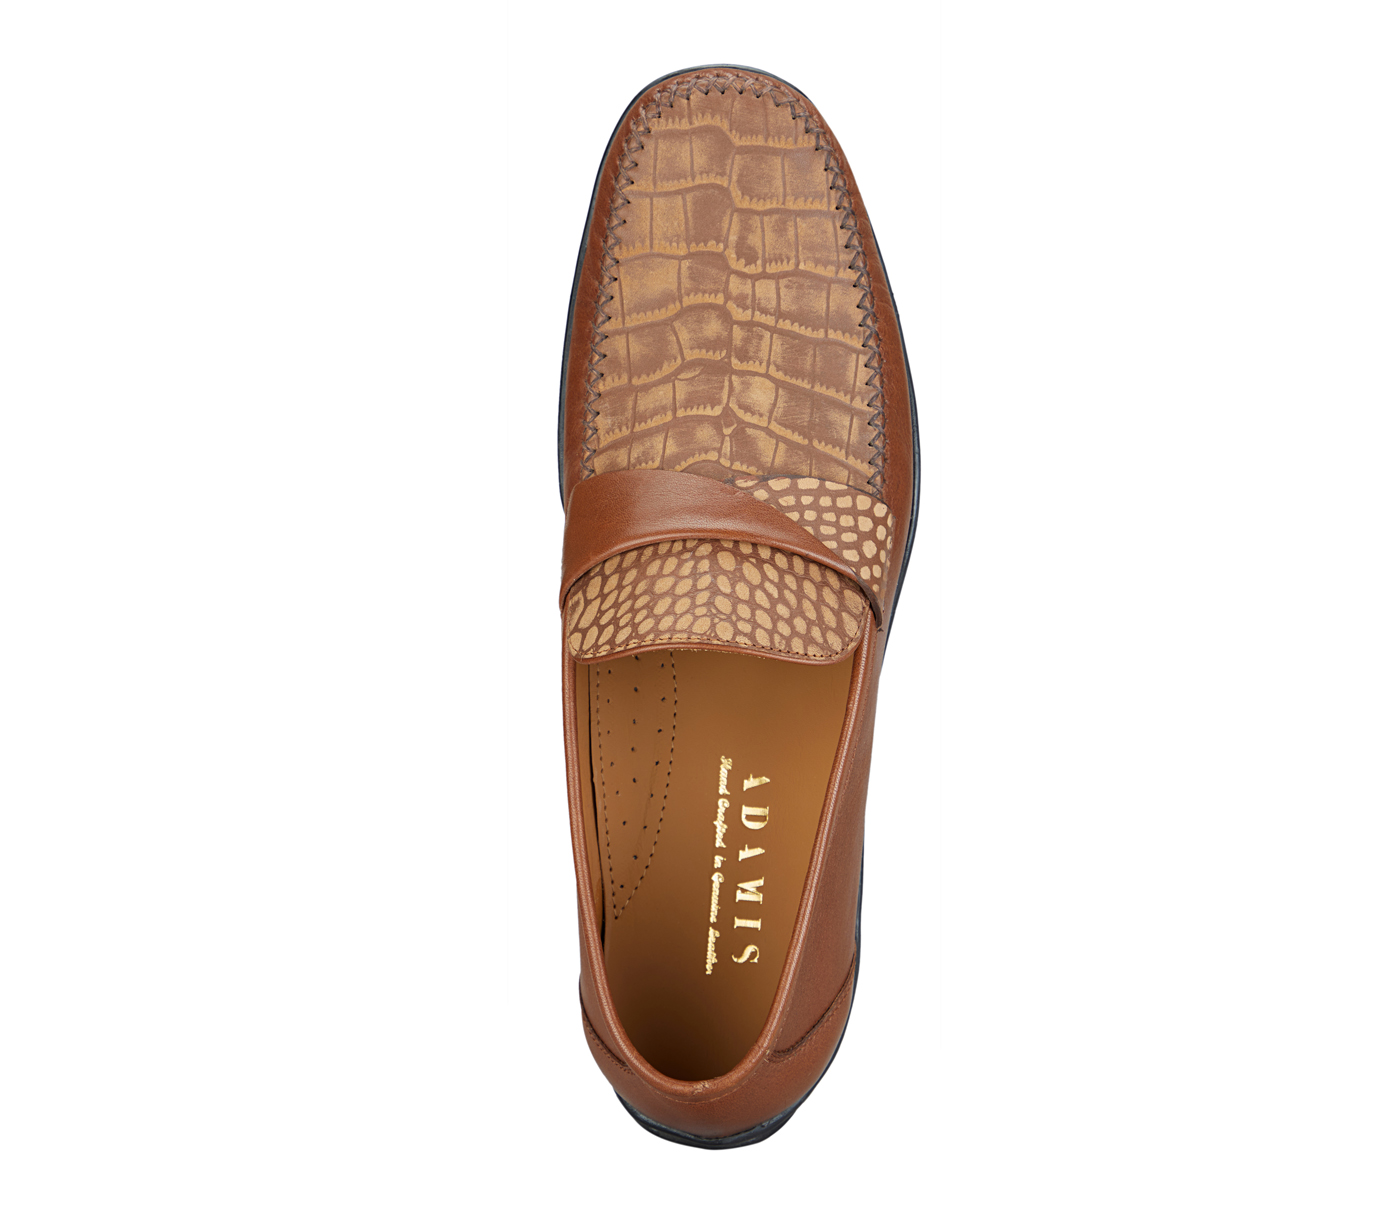 PF44-Adamis Pure Leather Footwear For Men- - Tan/Brown